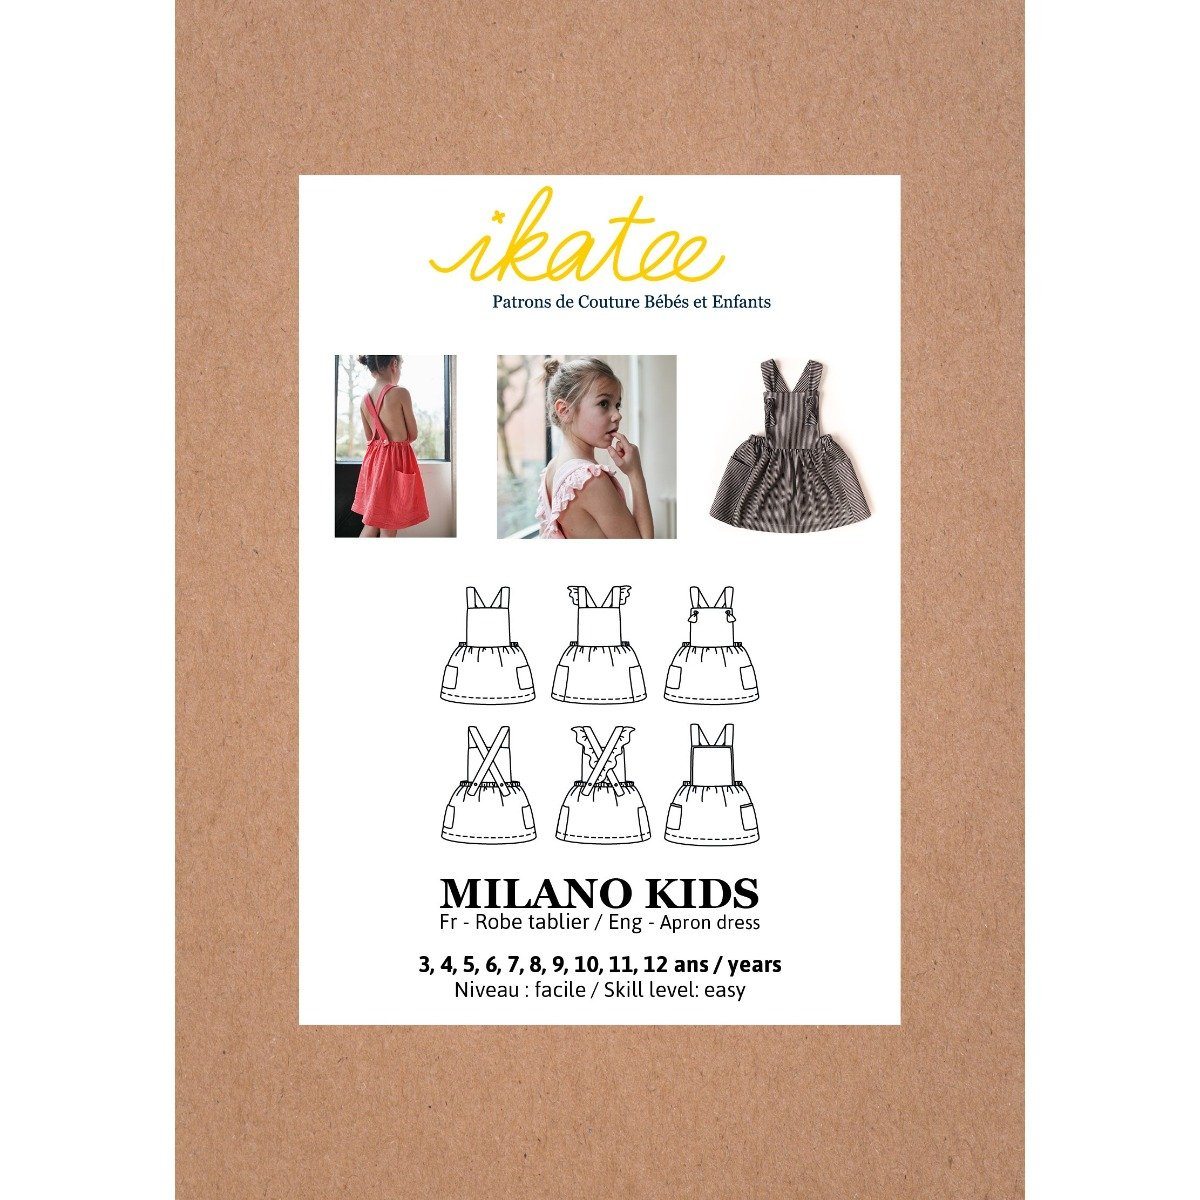 Robe tablier MILANO KIDS patron de couture pochette IKATEE Patron de couture Ikatee | Gaspard et Léonie Tissus en ligne et Mercerie à Toulouse